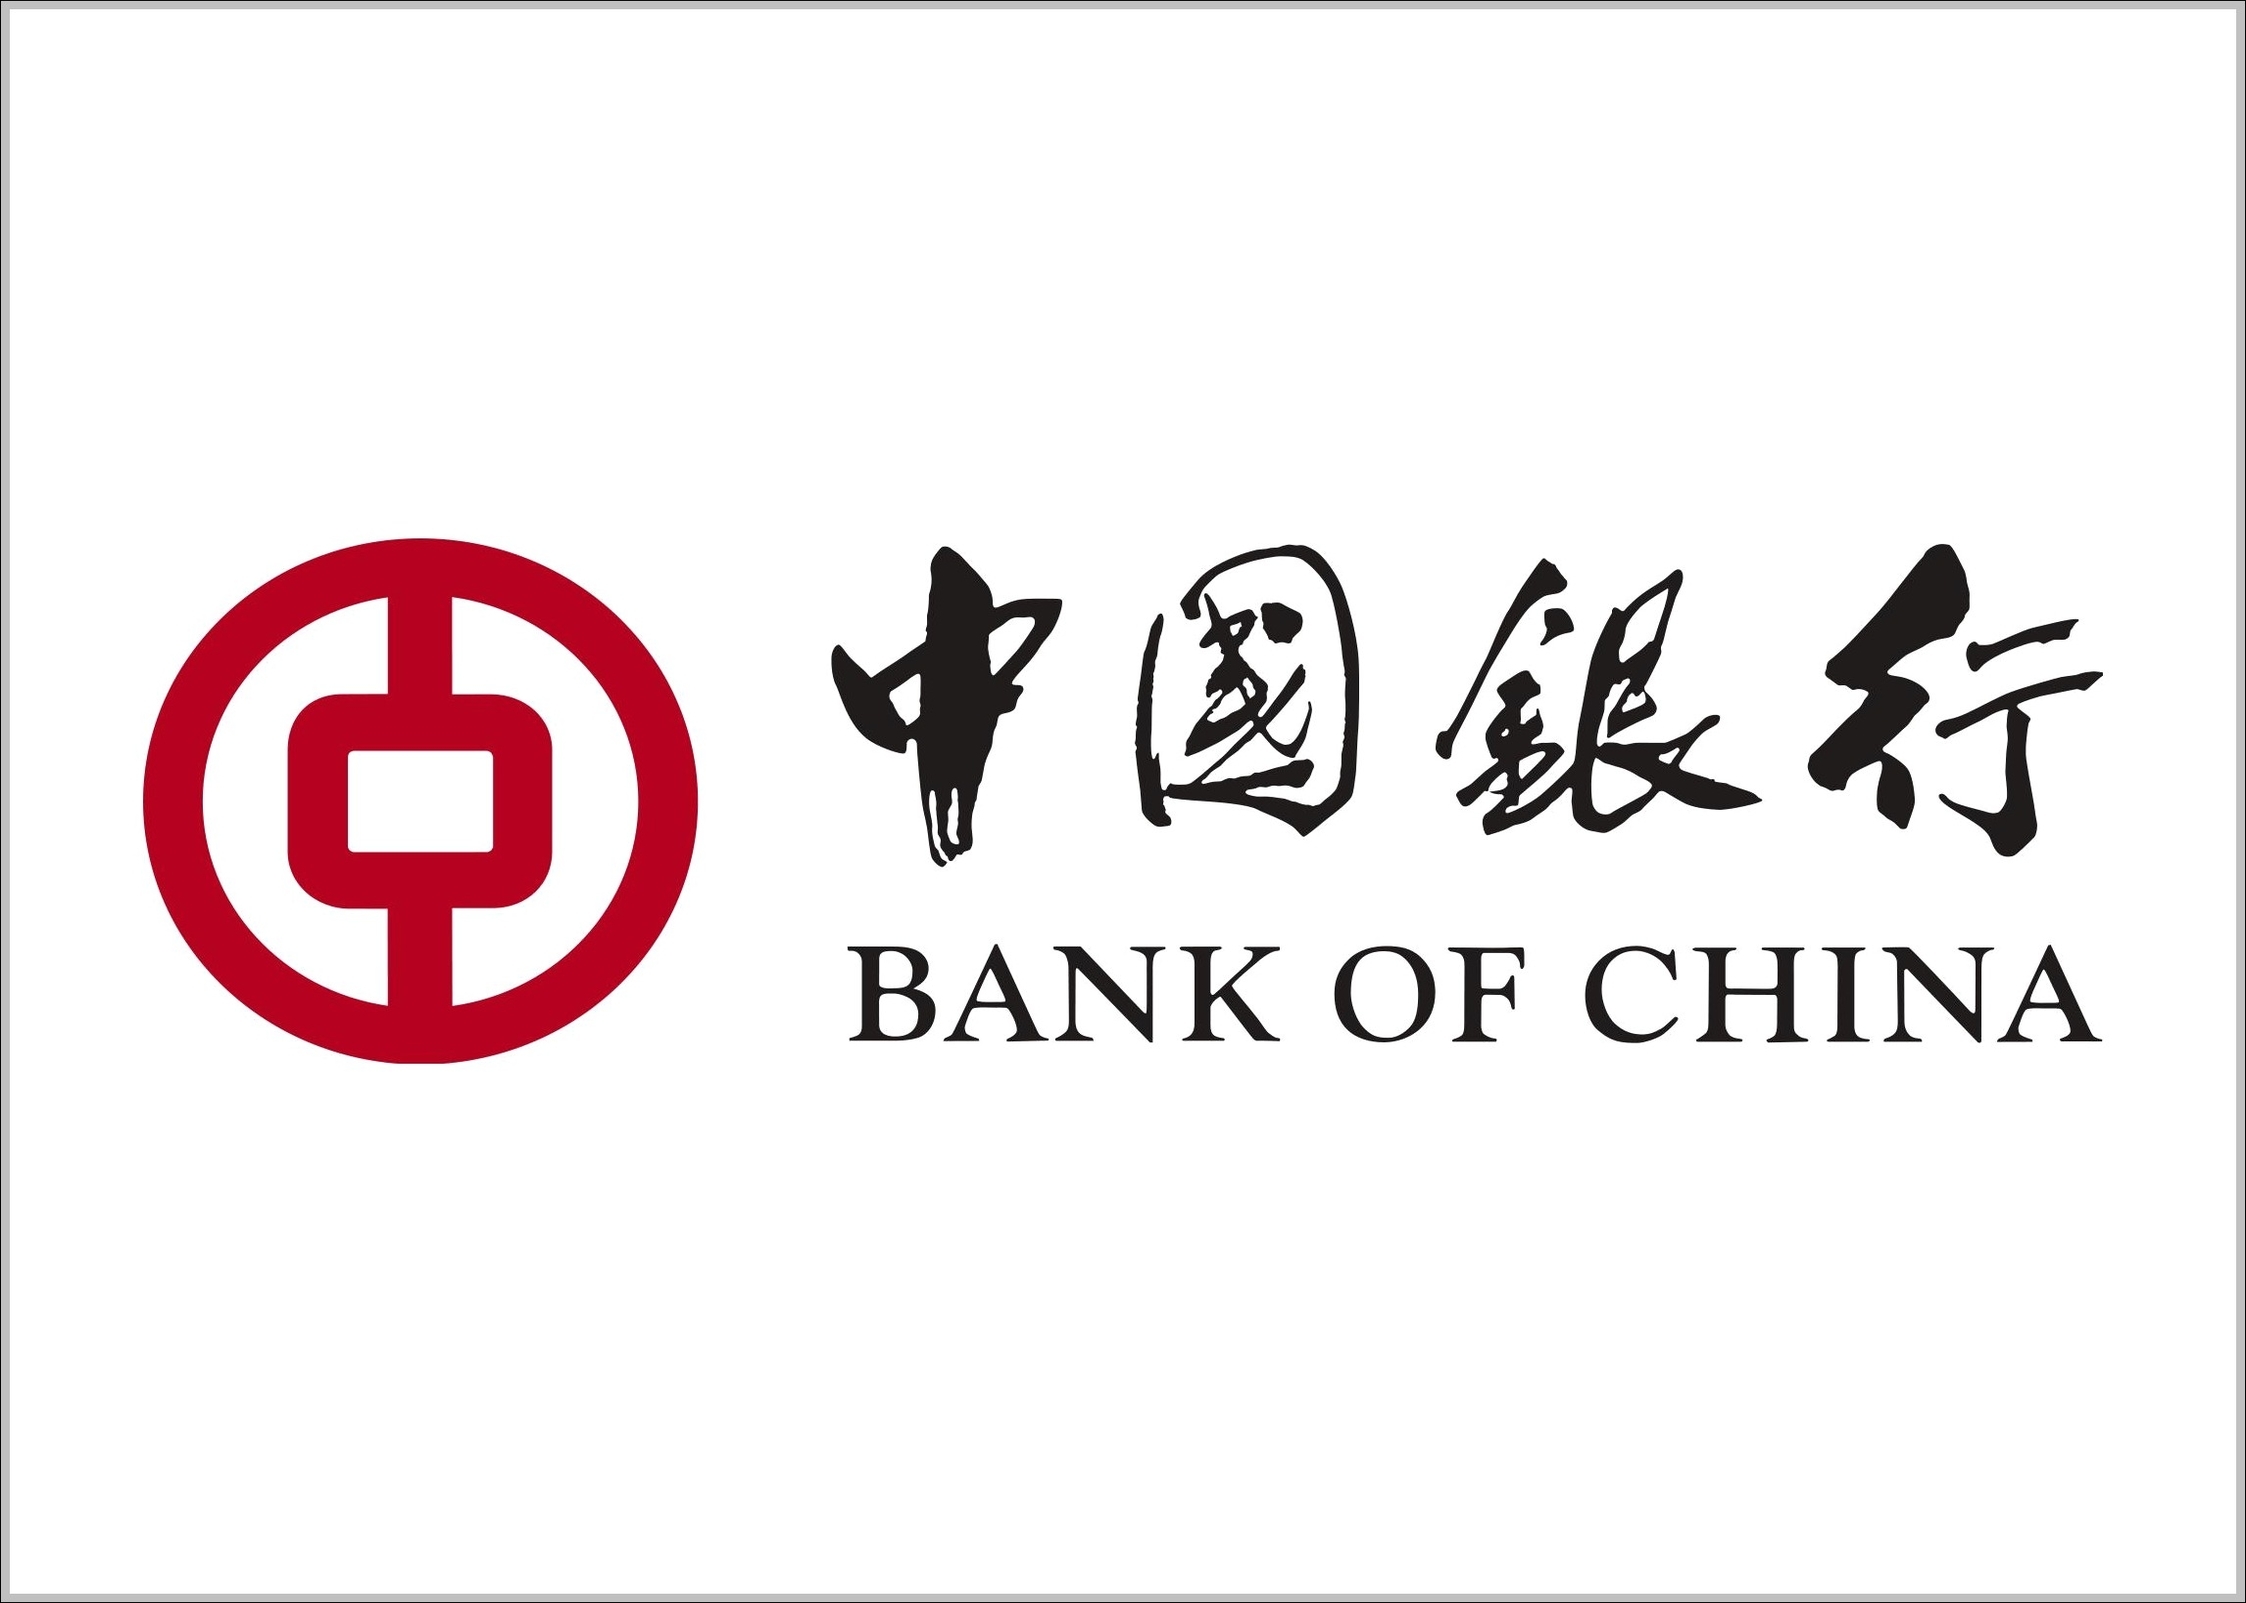 Bank of China Coin logo